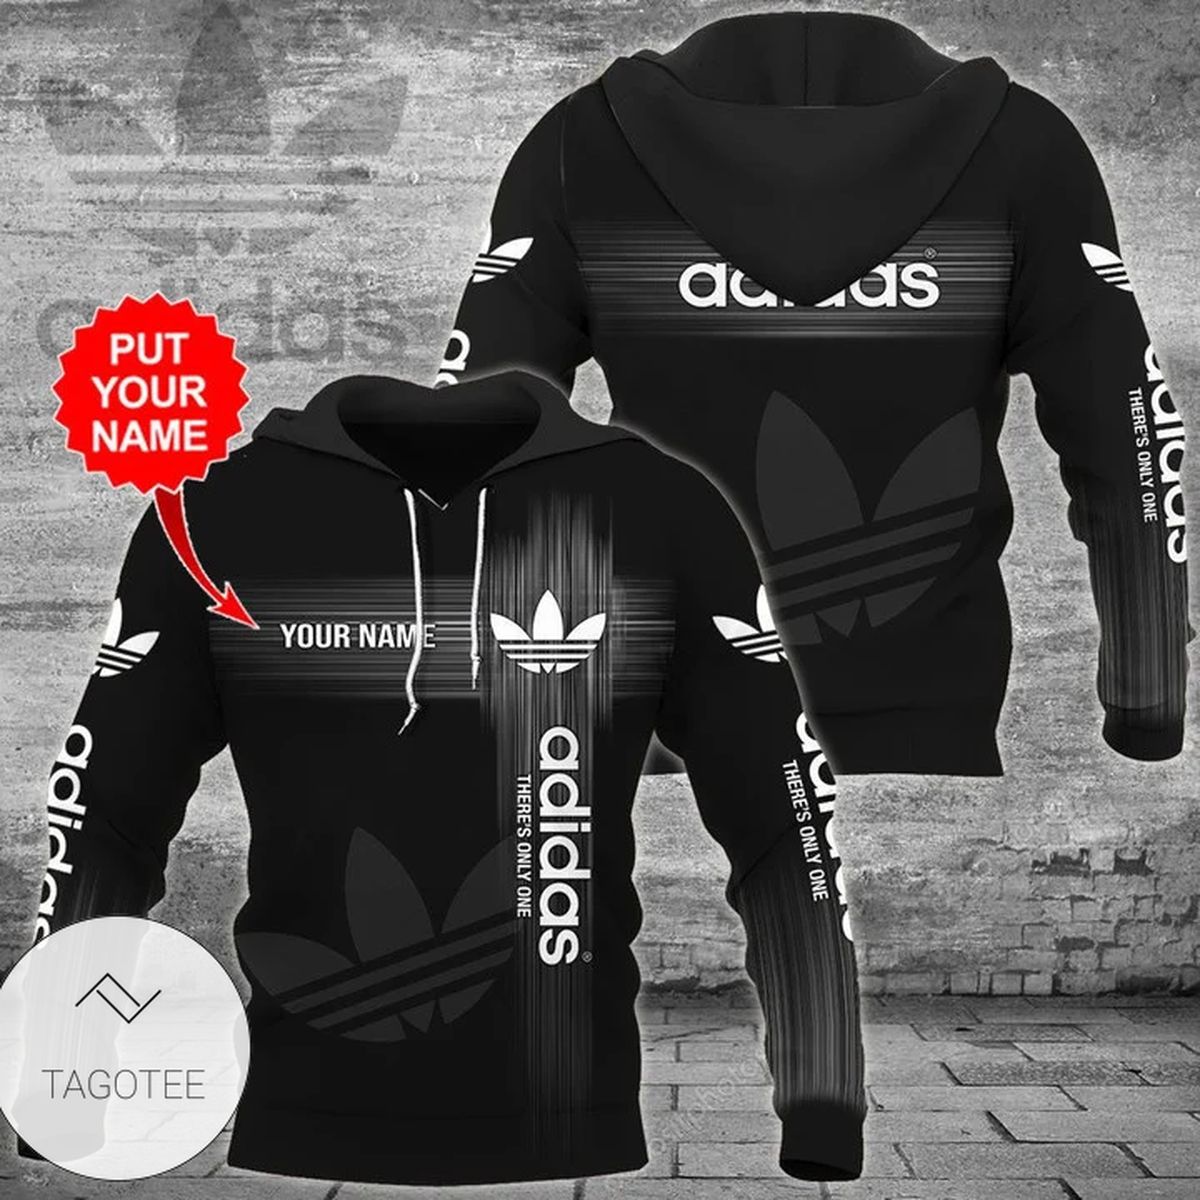 Adidas Black Hoodie